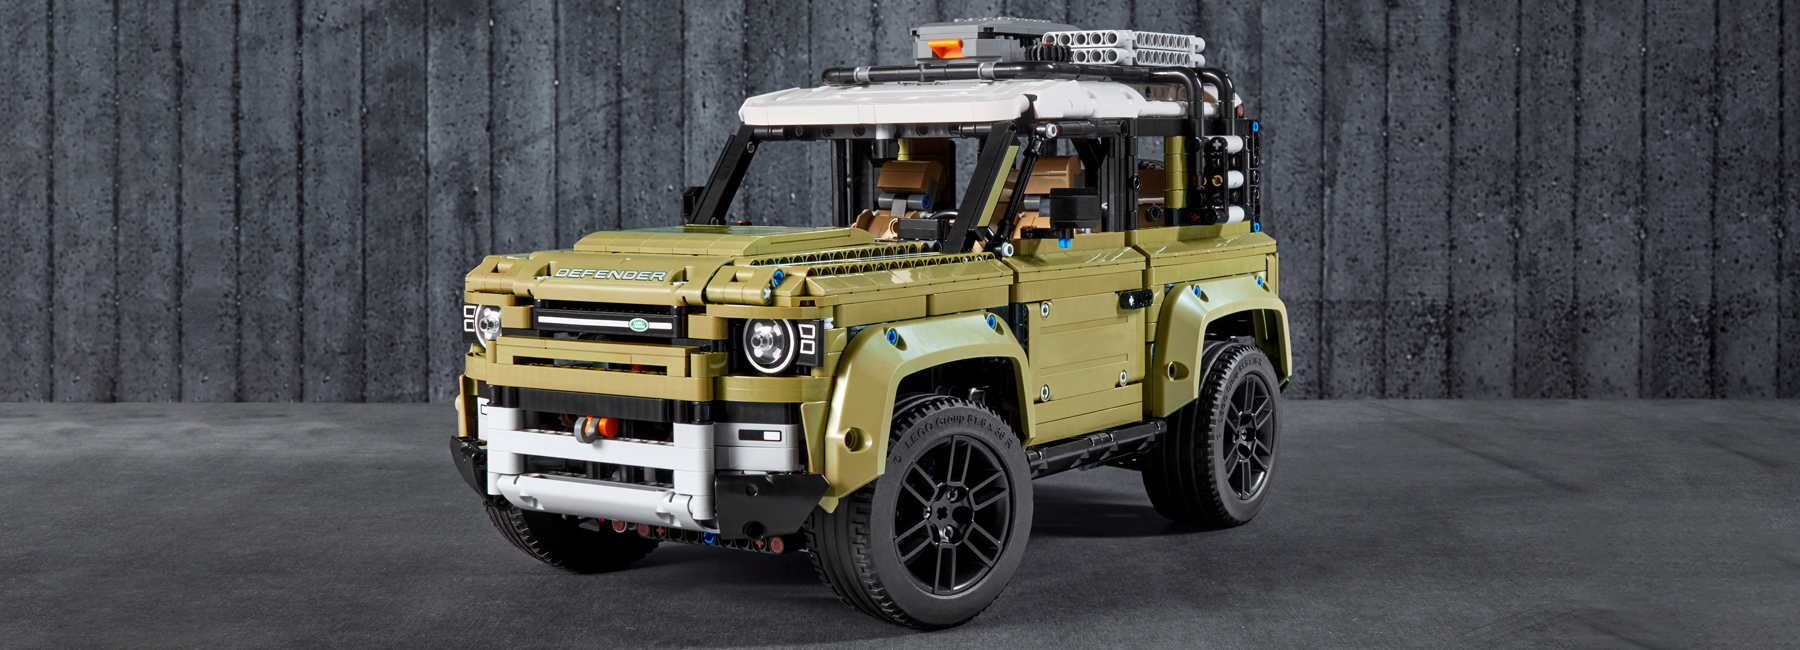 lego-2020-land-rover-defender-designboom-1800.jpg